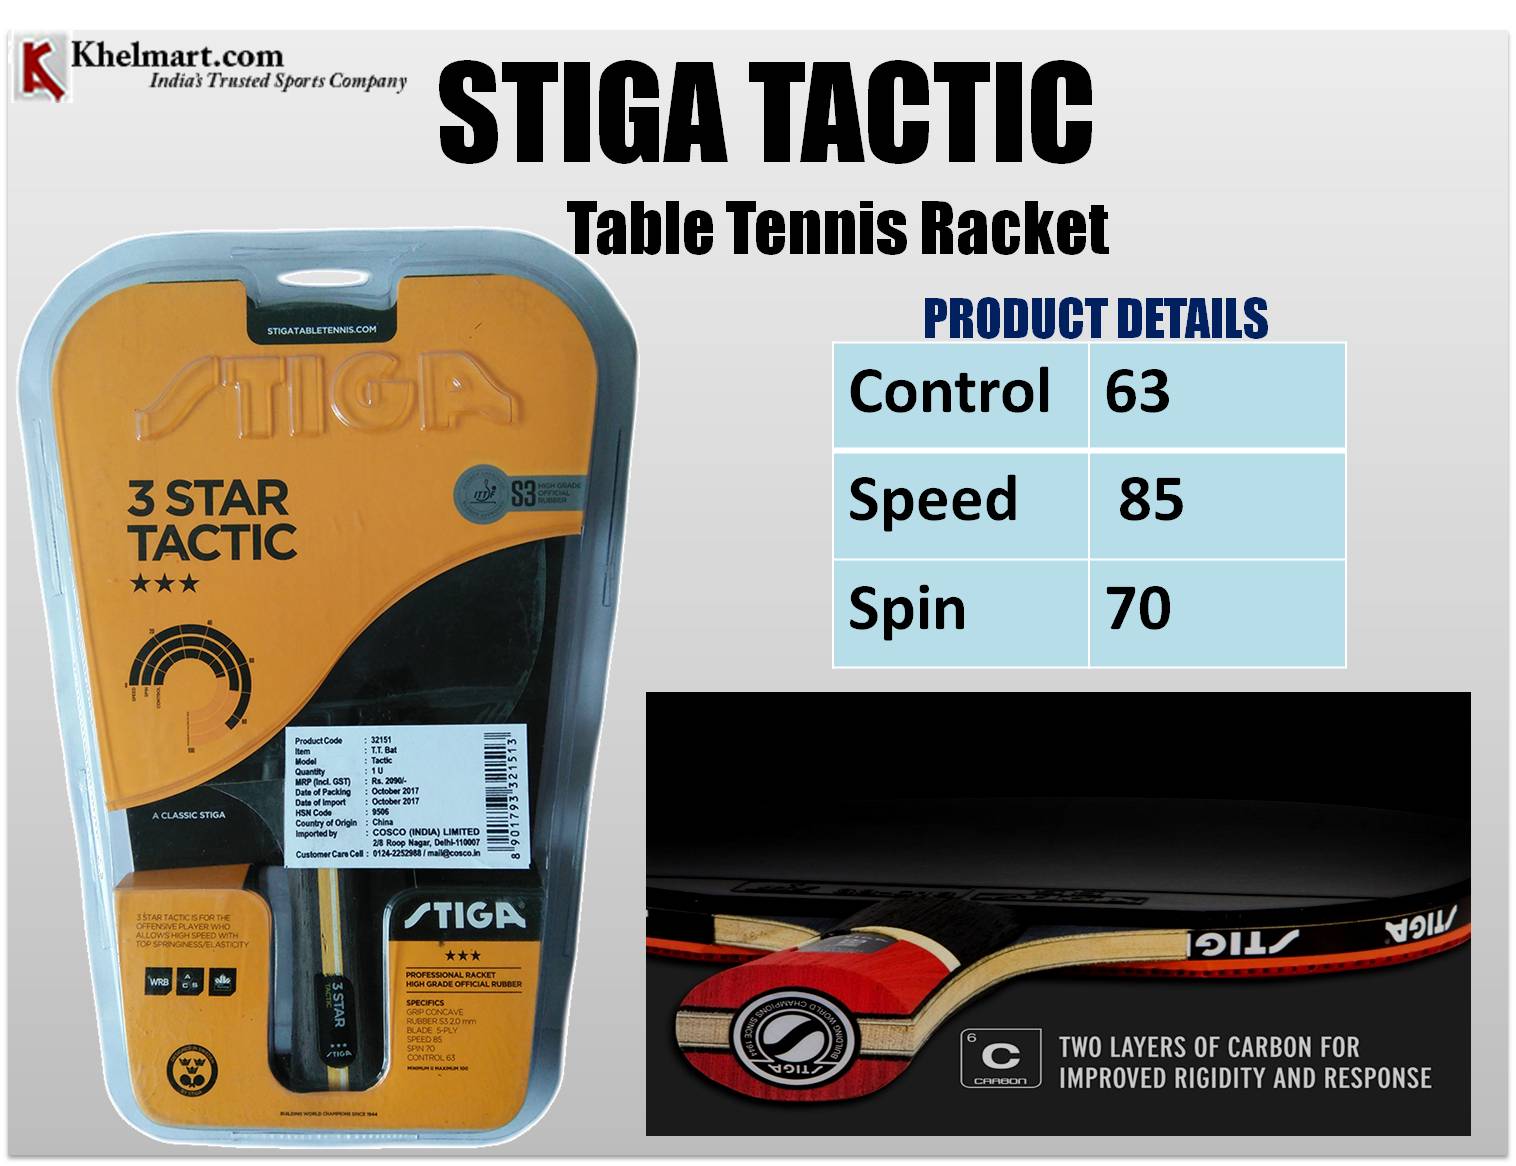 STIGA_TACTIC_Table_Tennis_Racket.jpg